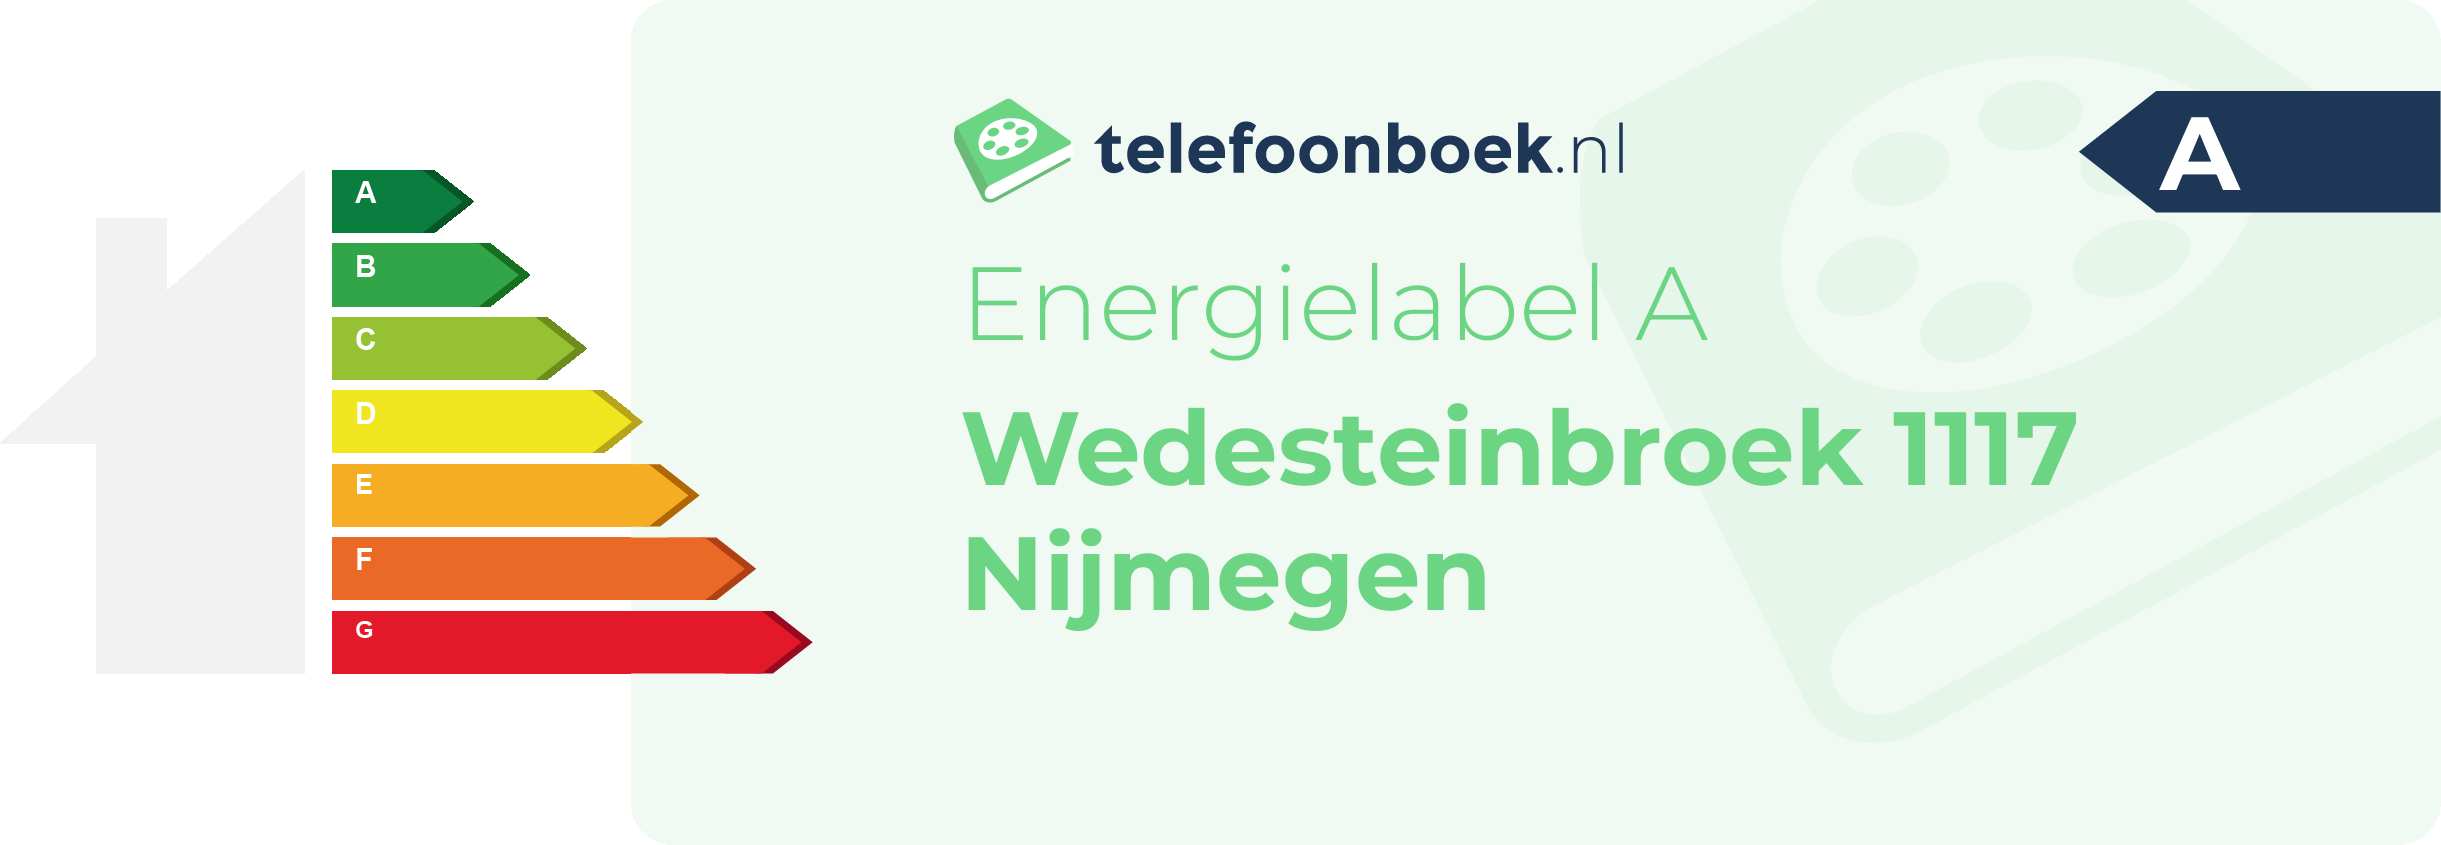 Energielabel Wedesteinbroek 1117 Nijmegen